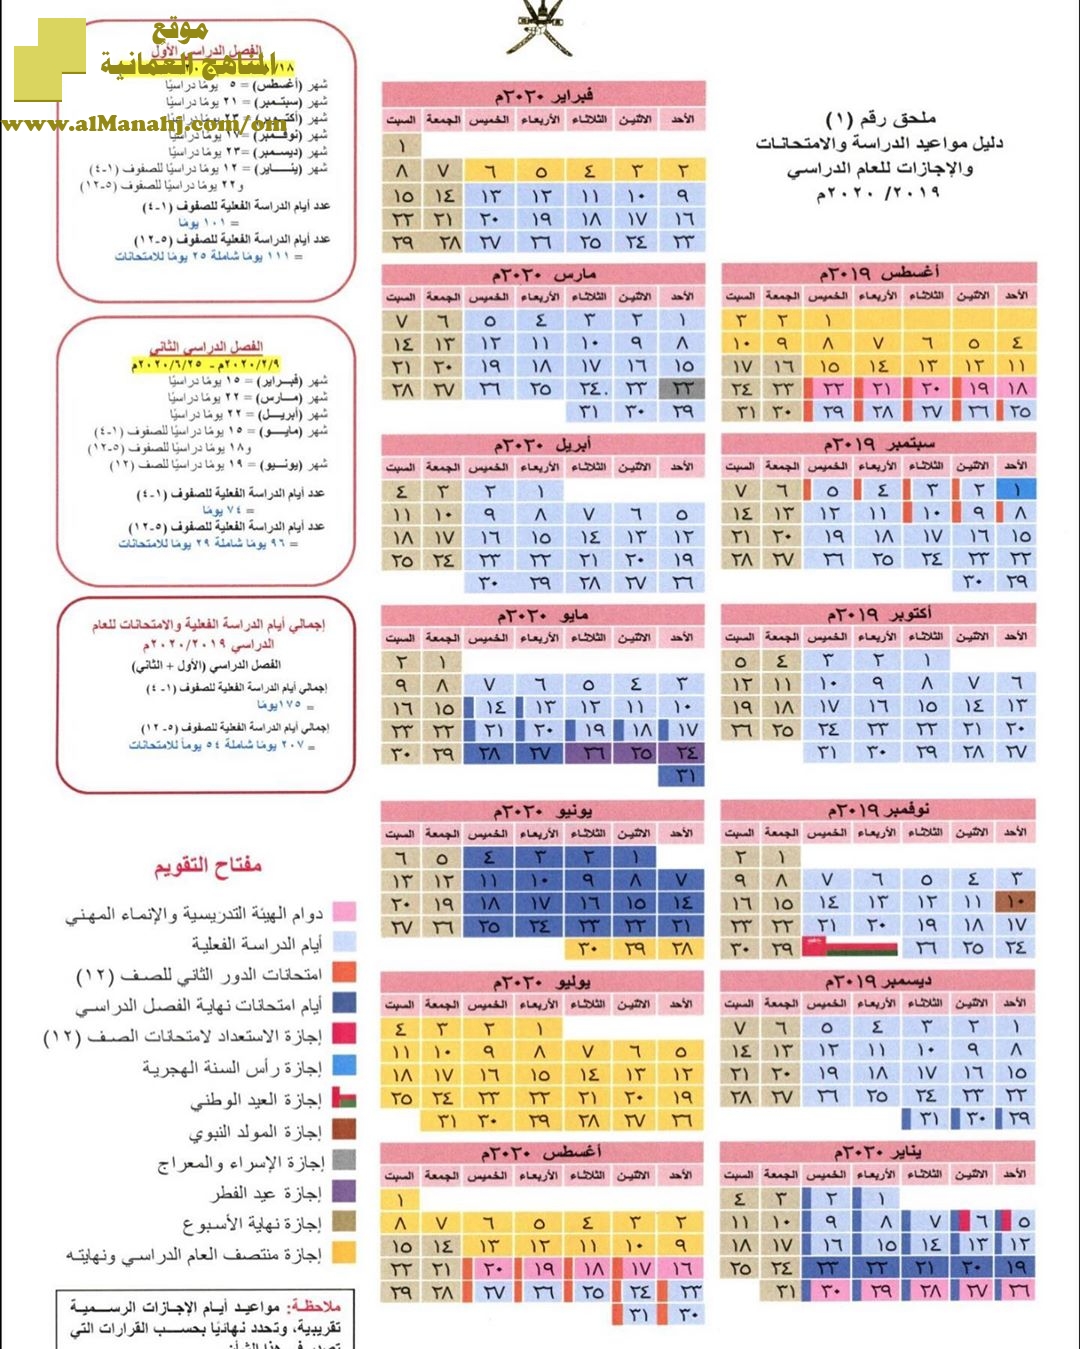 تحميل دليل مواعيد الدراسة والامتحانات والاجازات سلطنة عمان 2019 2020 أخبار الدوام الفصل الأول المناهج العمانية